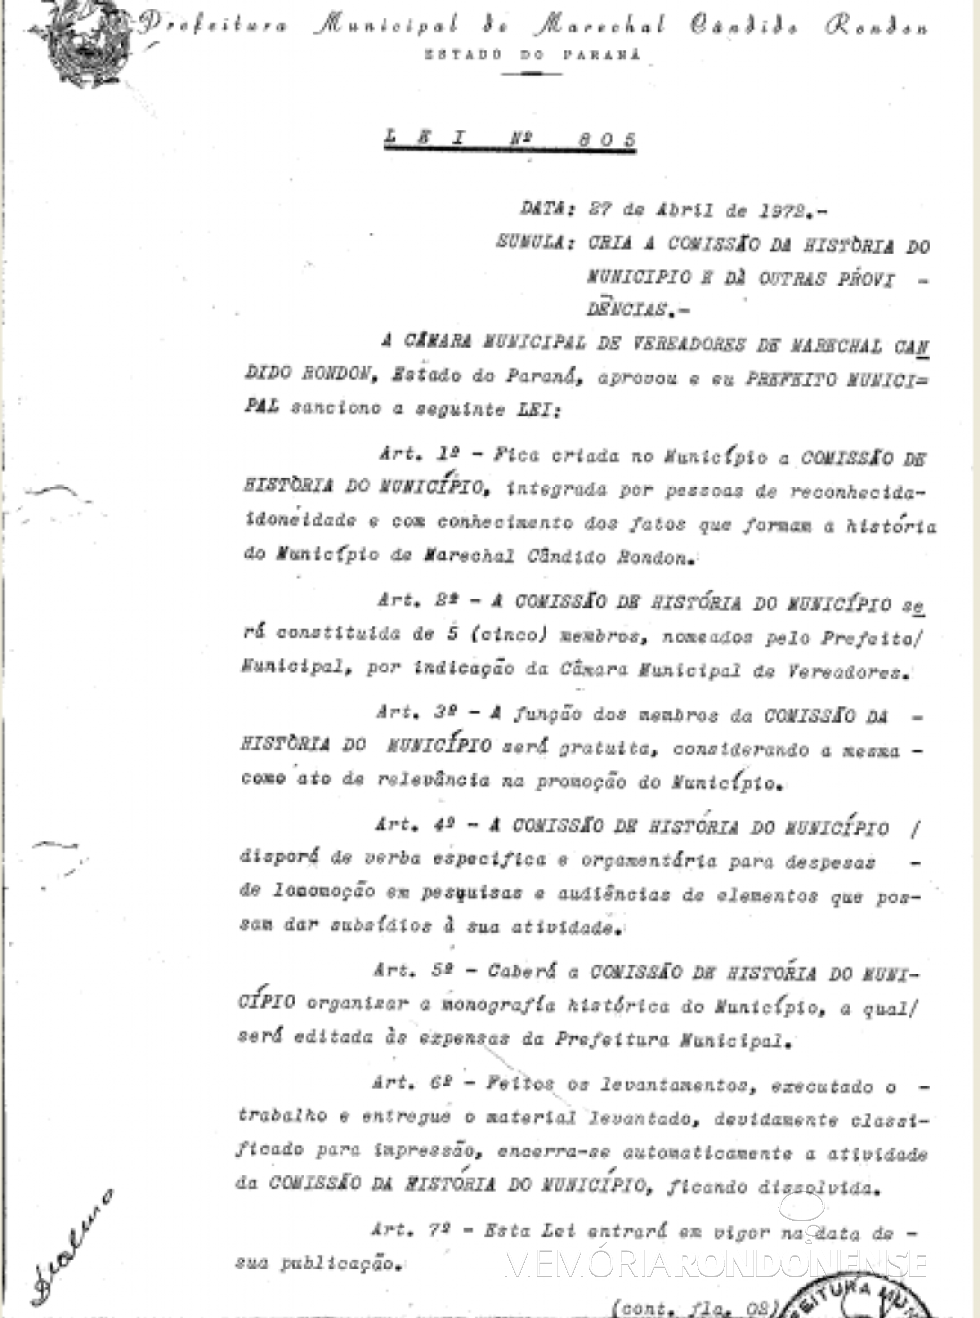 || Cópia da Lei nº 805, de 27 de abril de 19073, que autorizou a criação da Comissão de História do Município de Marechal Cândido Rondon - FOTO 6 -